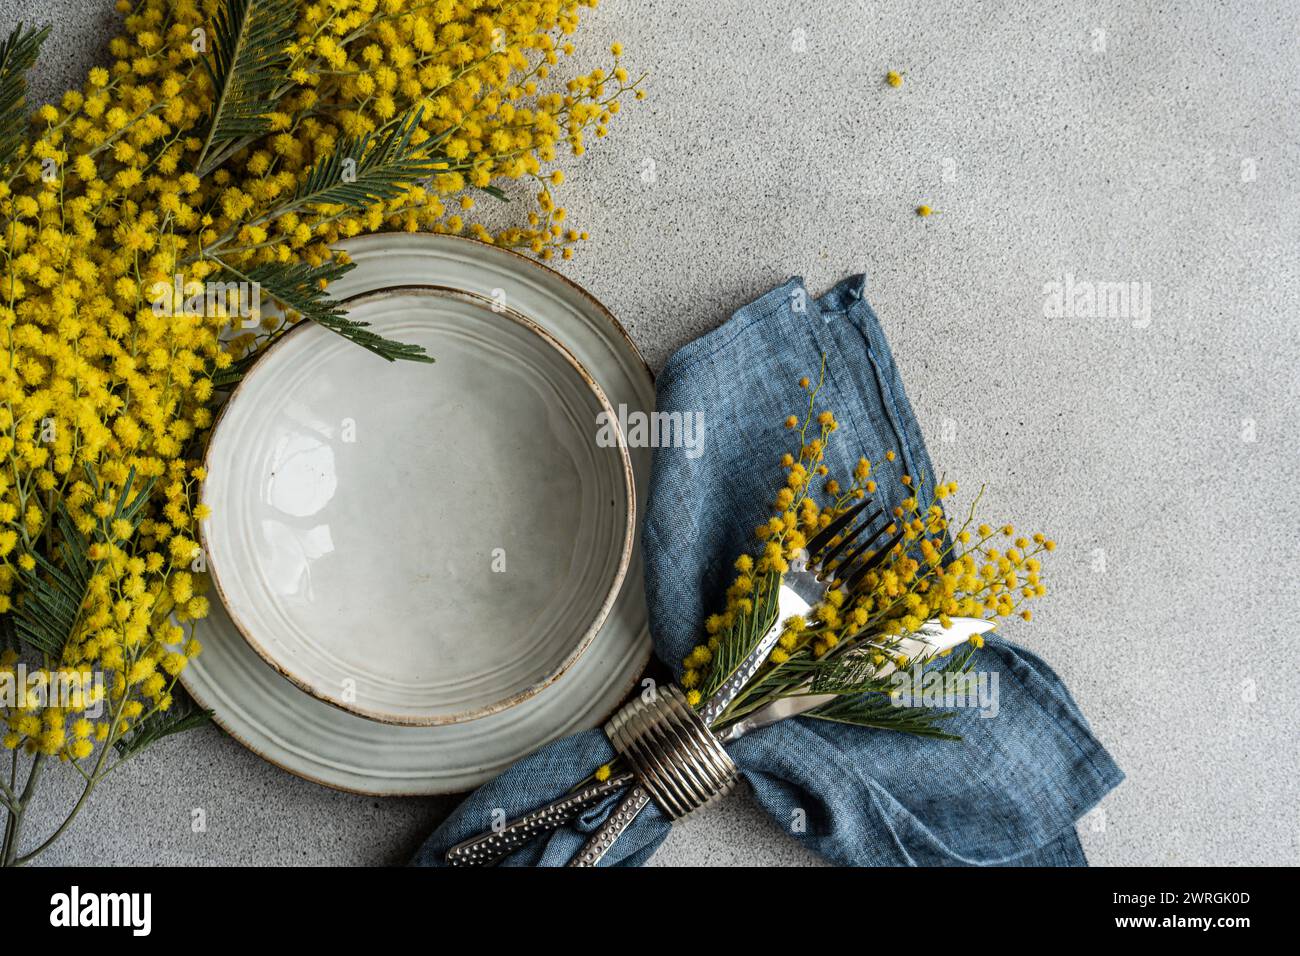 Vue de dessus d'un cadre de lieu avec des fleurs de mimosa jaunes sur une table Banque D'Images